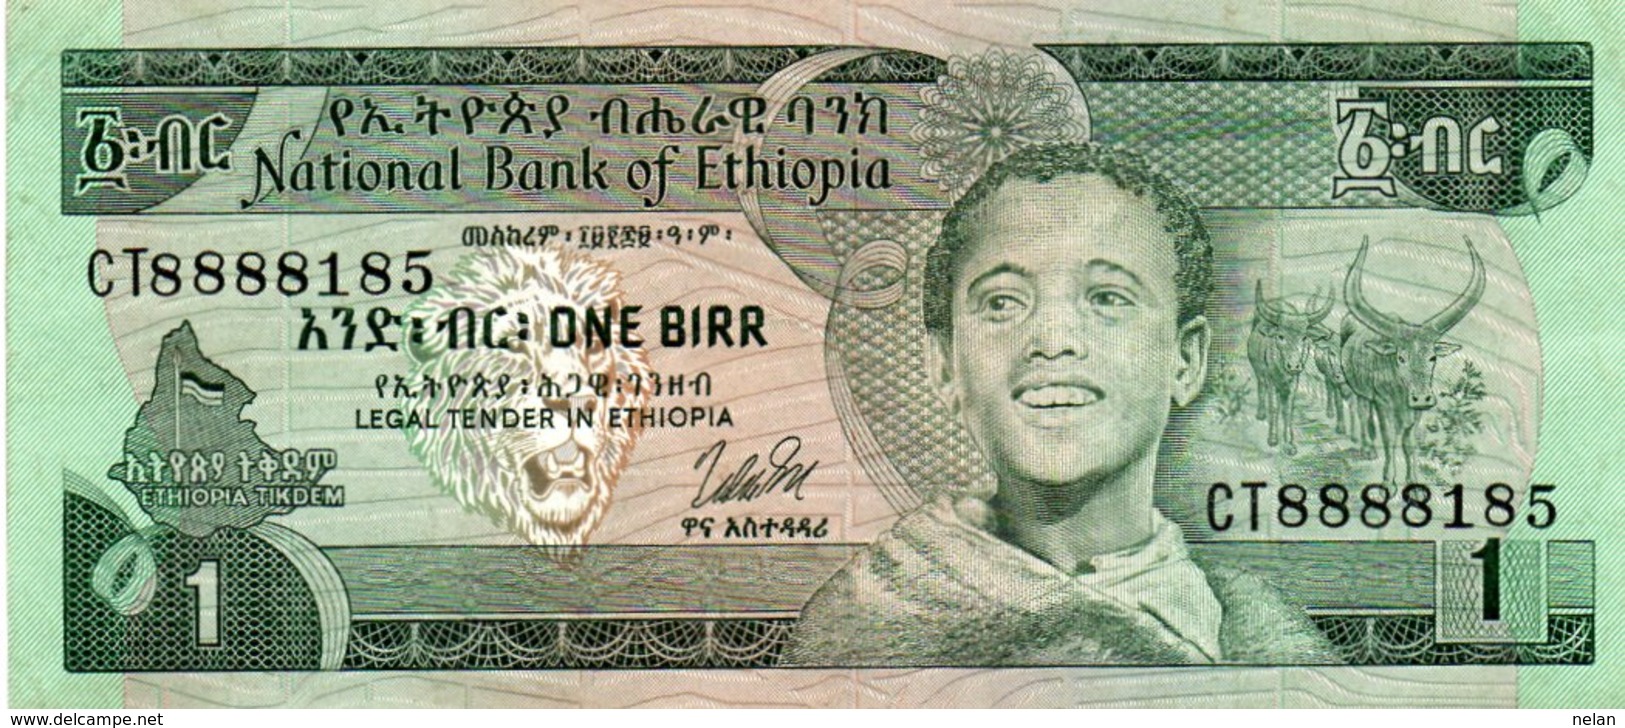 ETHIOPIA 1 BIRR 1976 P-30b XF+AUNC  SERIE CT8888185 - Ethiopië